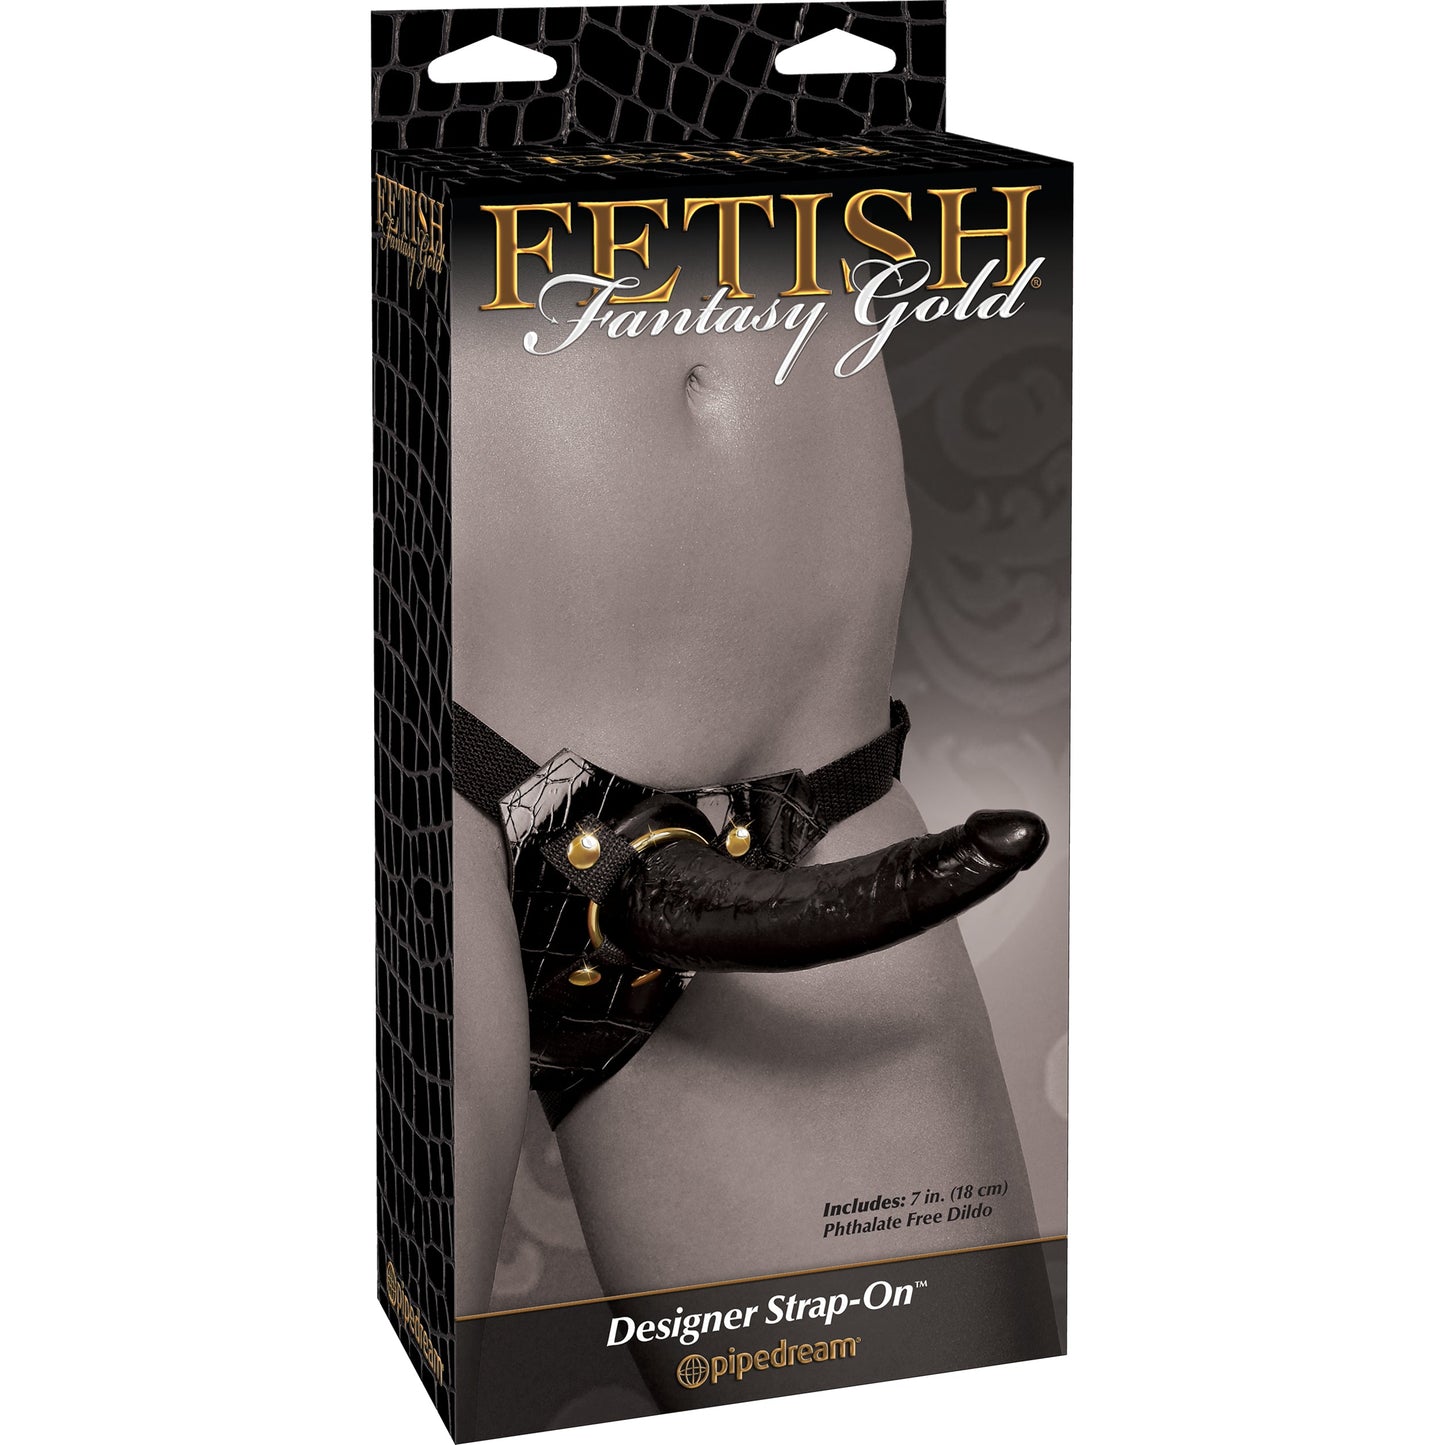 Fetish Fantasy Gold Designer Strap-on - Black